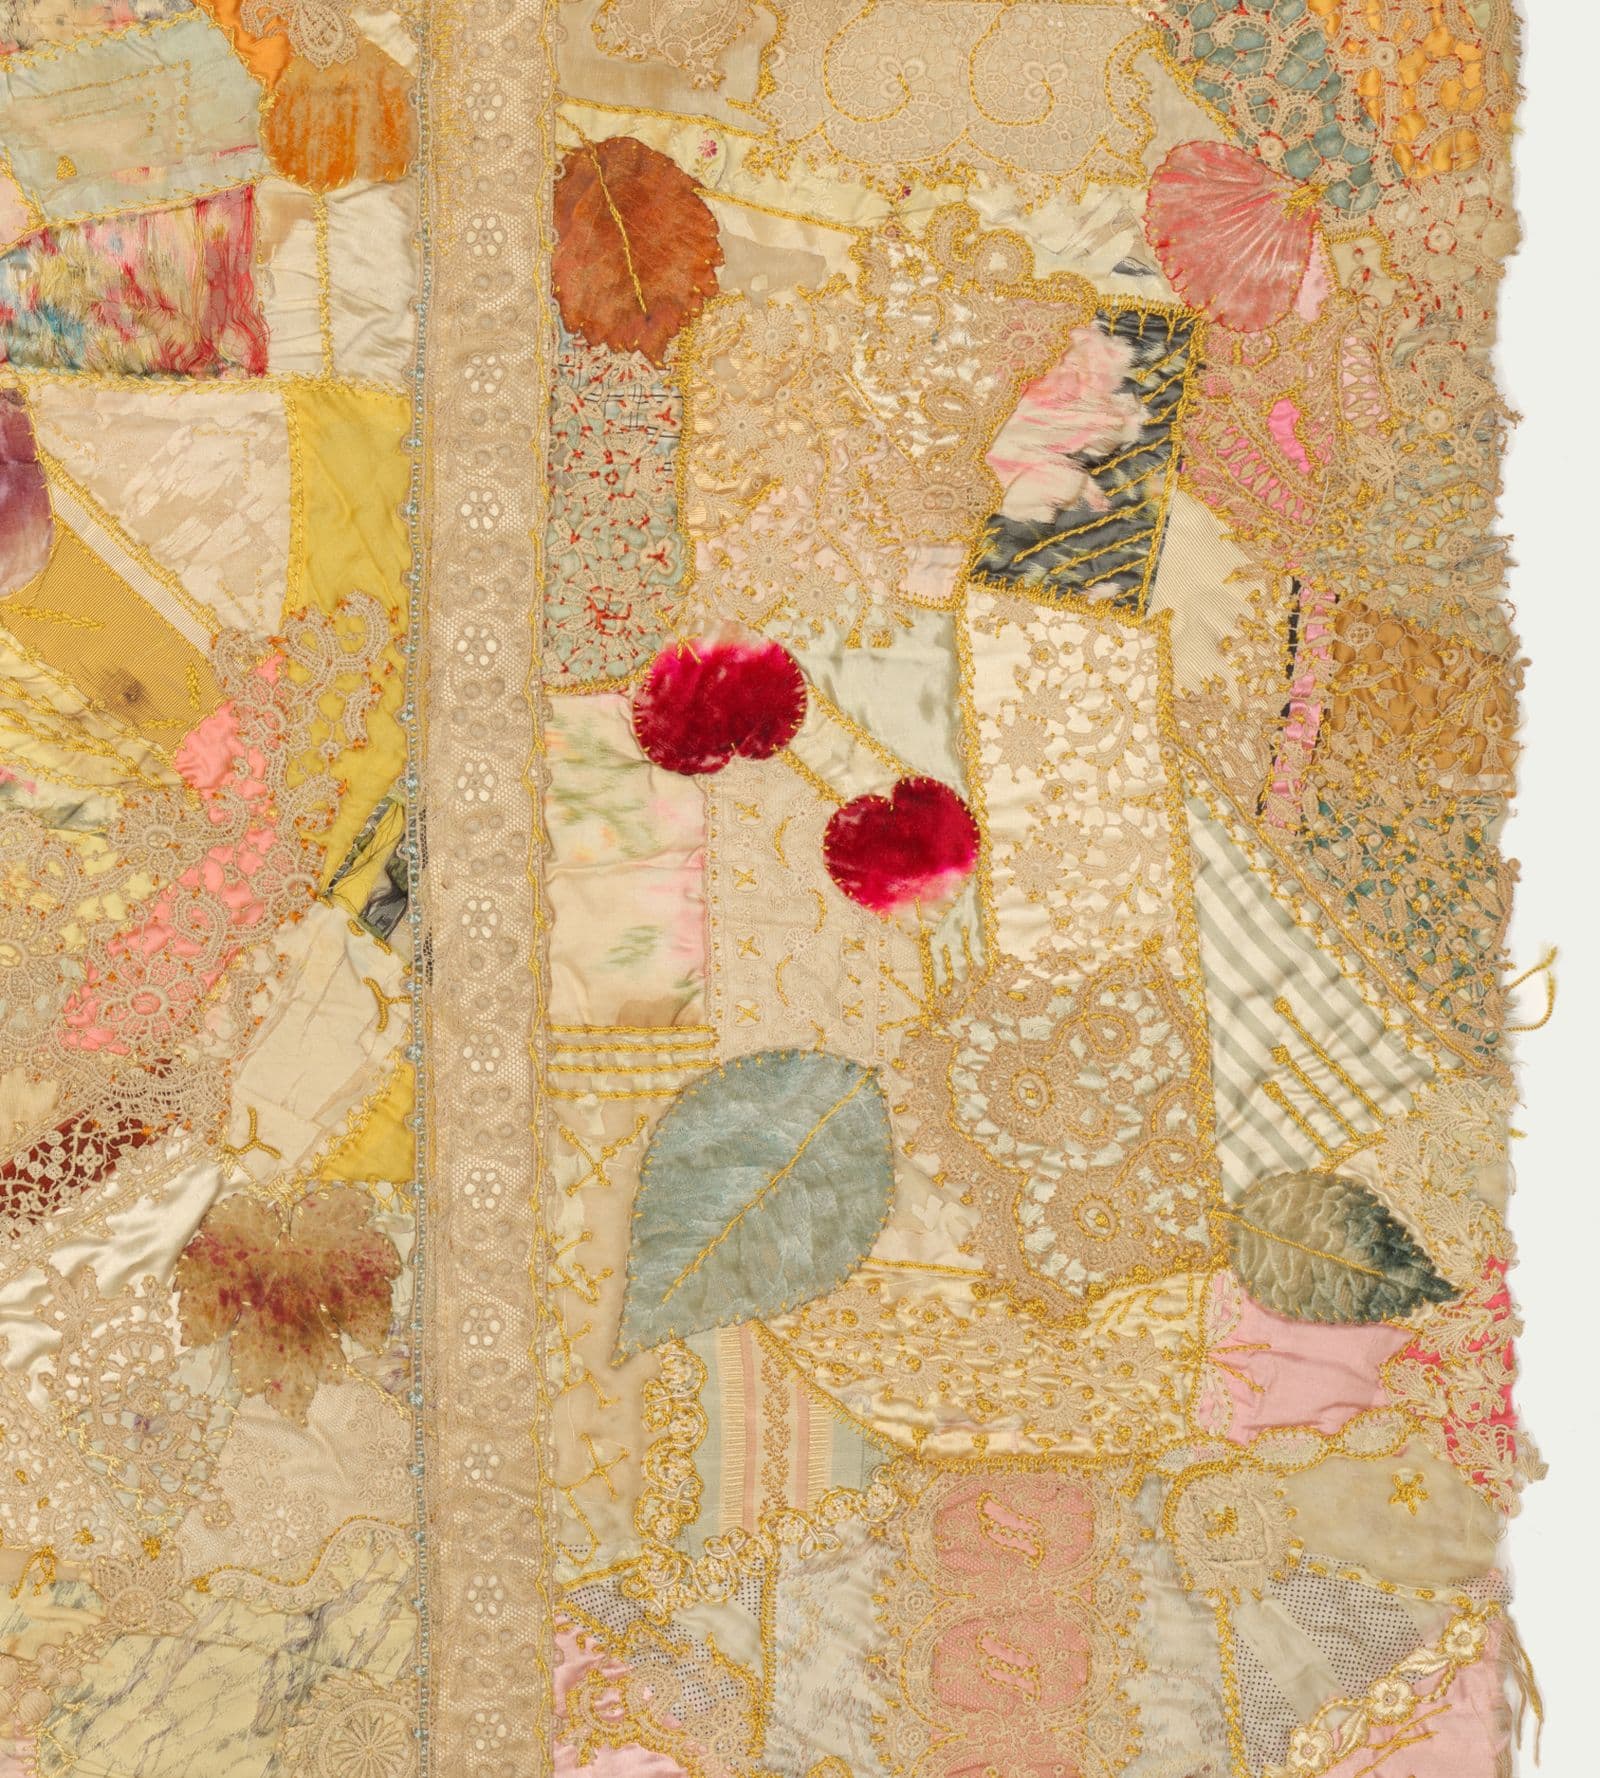 Margaret Weir, Piece of a quilt, c.1910